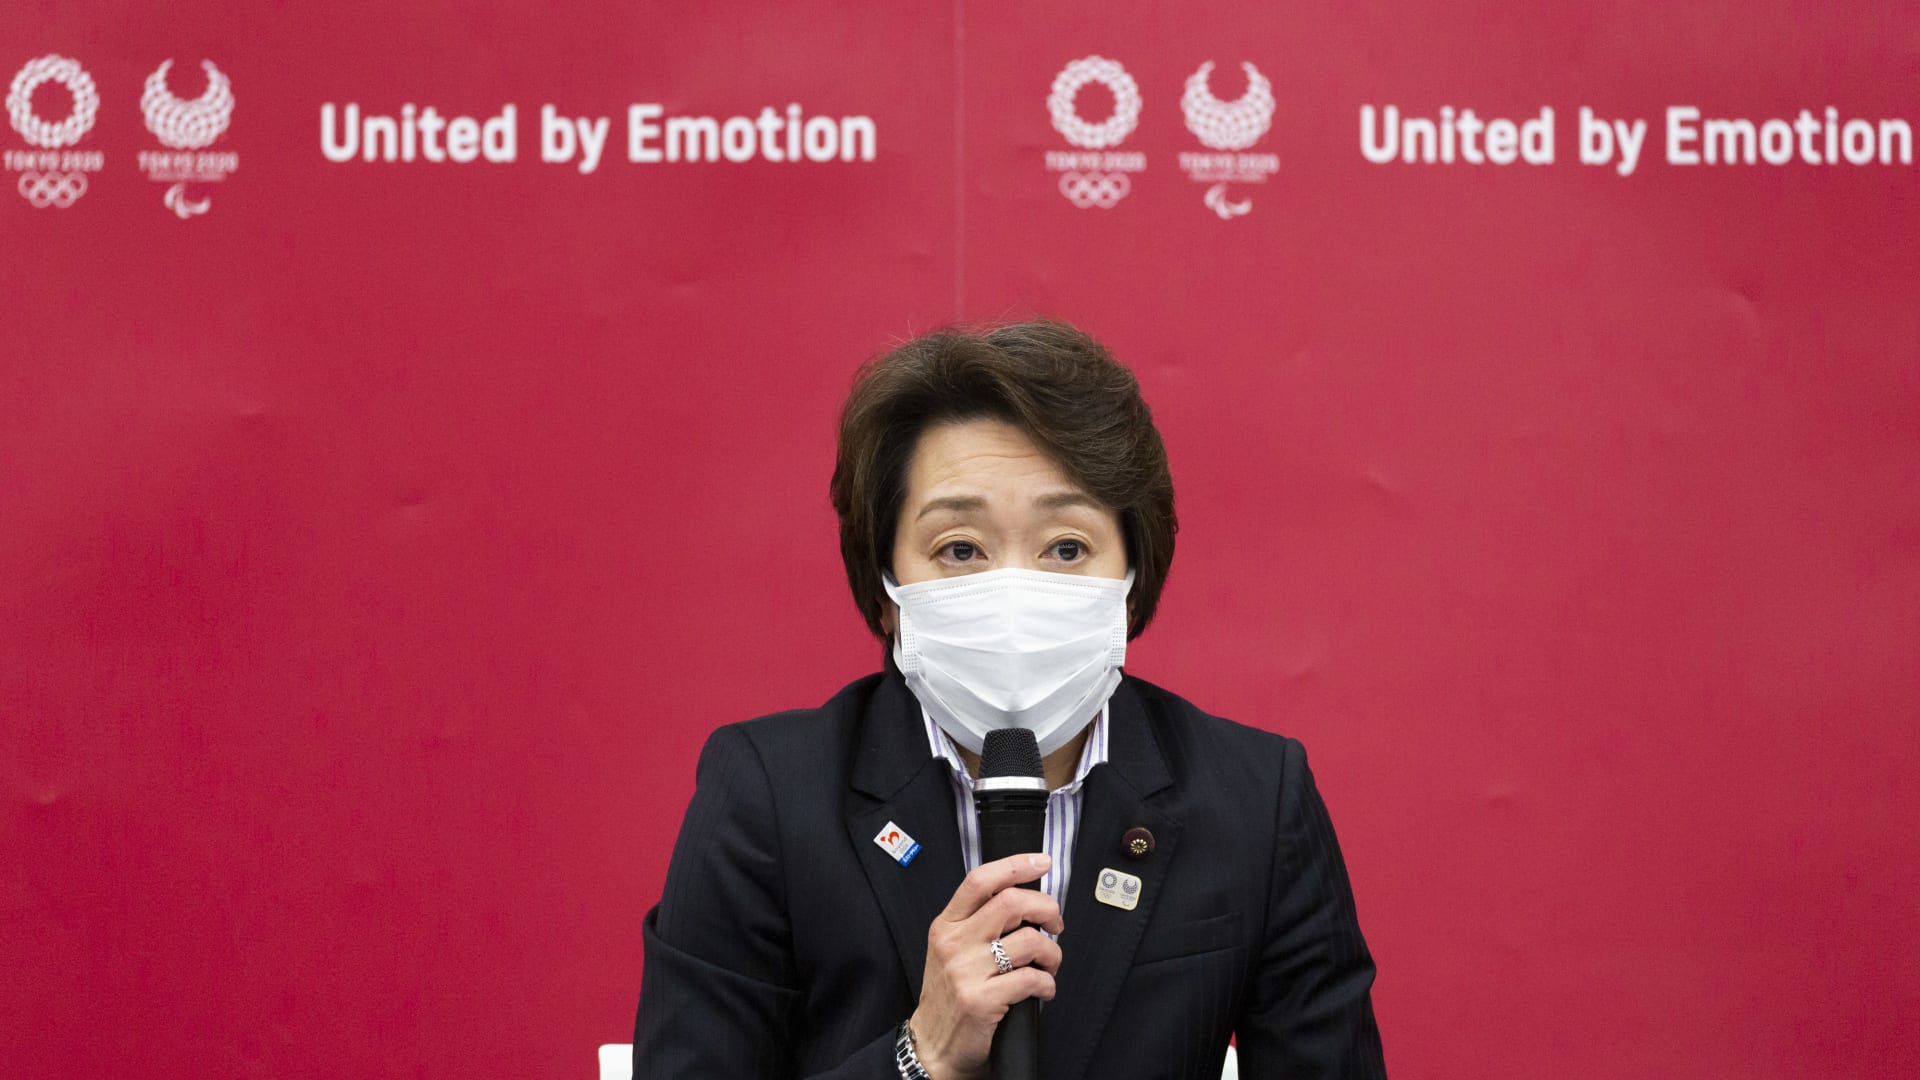 رئيس لجنة تنظيم أولمبياد طوكيو يعتذر عن "تعليقات غير لائقة" بحق النساء